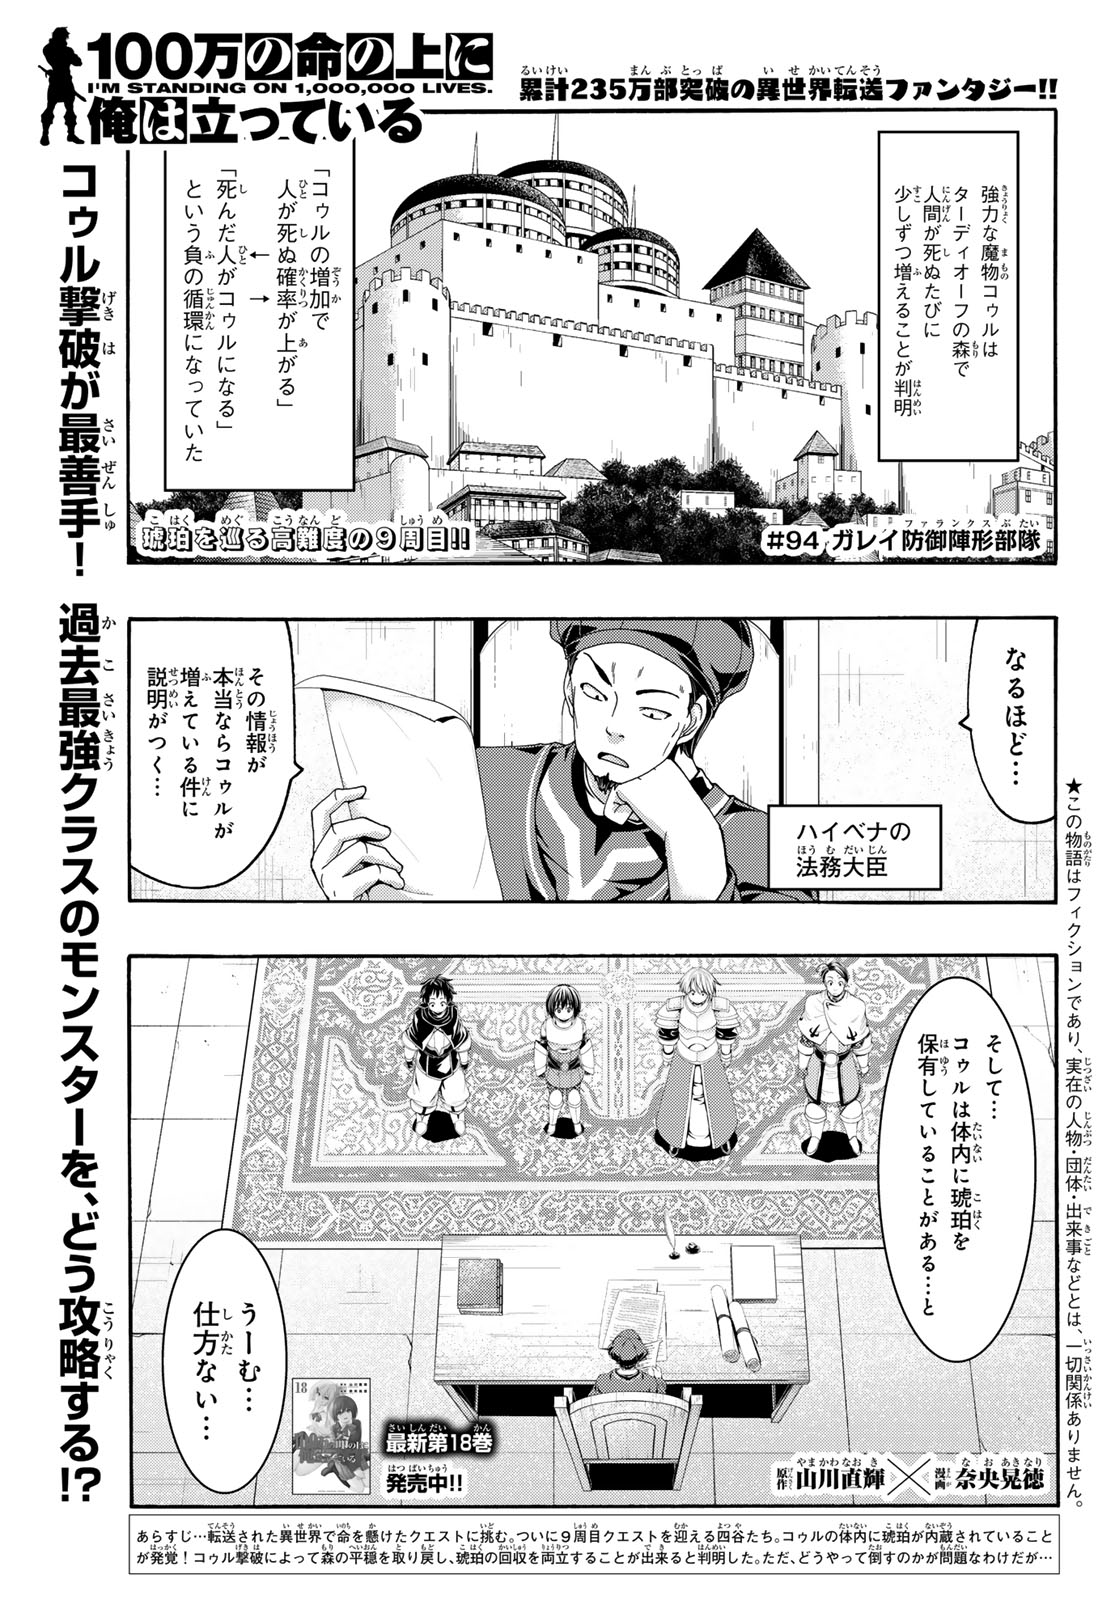 100-man no Inochi no Ue ni Ore wa Tatte Iru - Chapter 94 - Page 1